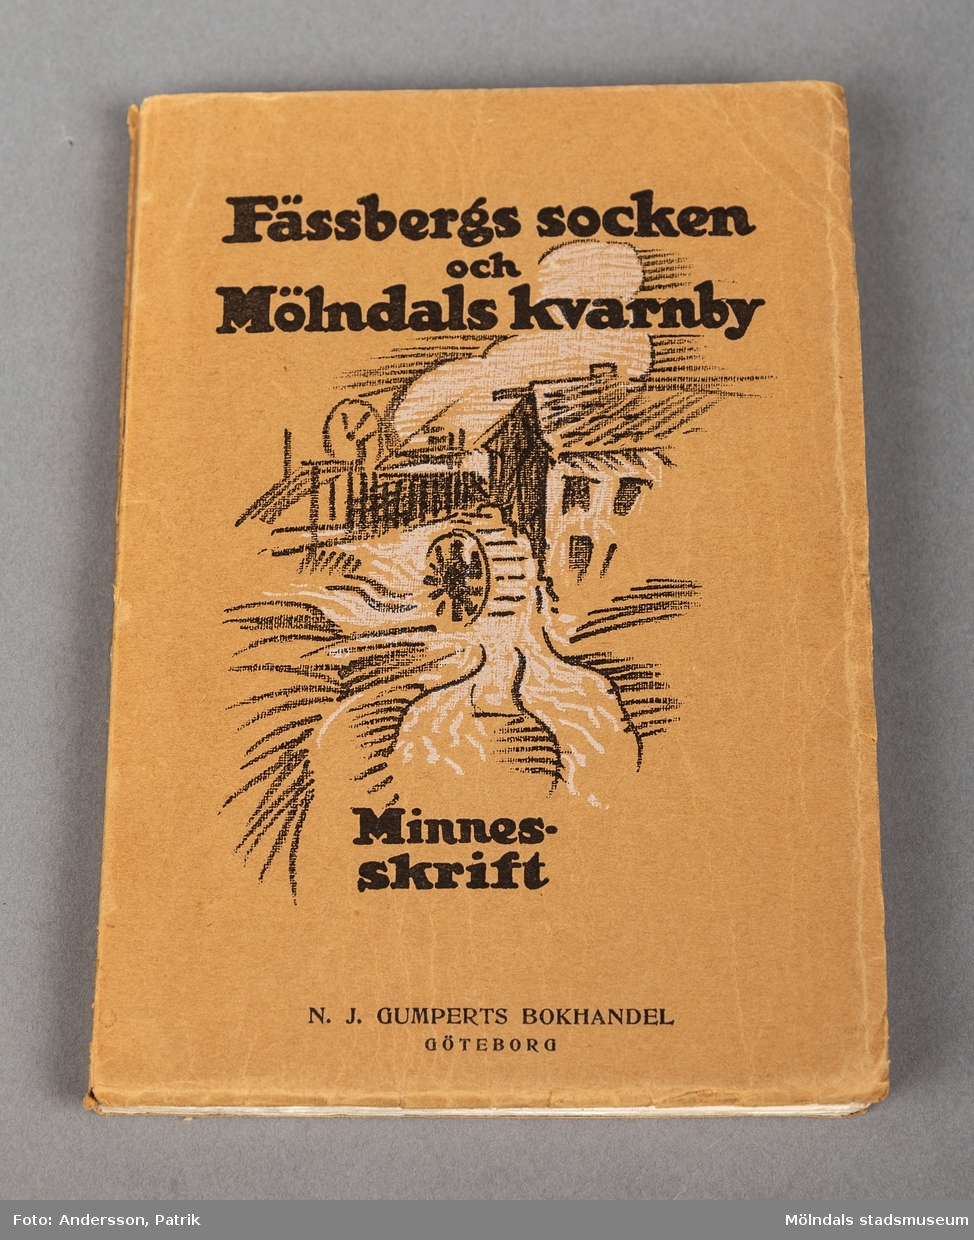 En minnesskrift om Fässbergs socken och Mölndals Kvarnby. Skriften är i bokformat med mjuk pärm. Utsiadan är av brun kartong och texten är tryckt med svarta tjocka bokstäver. 
Det finns en tecknad bild av en kvarn vid forsen i Kvarnbyn.